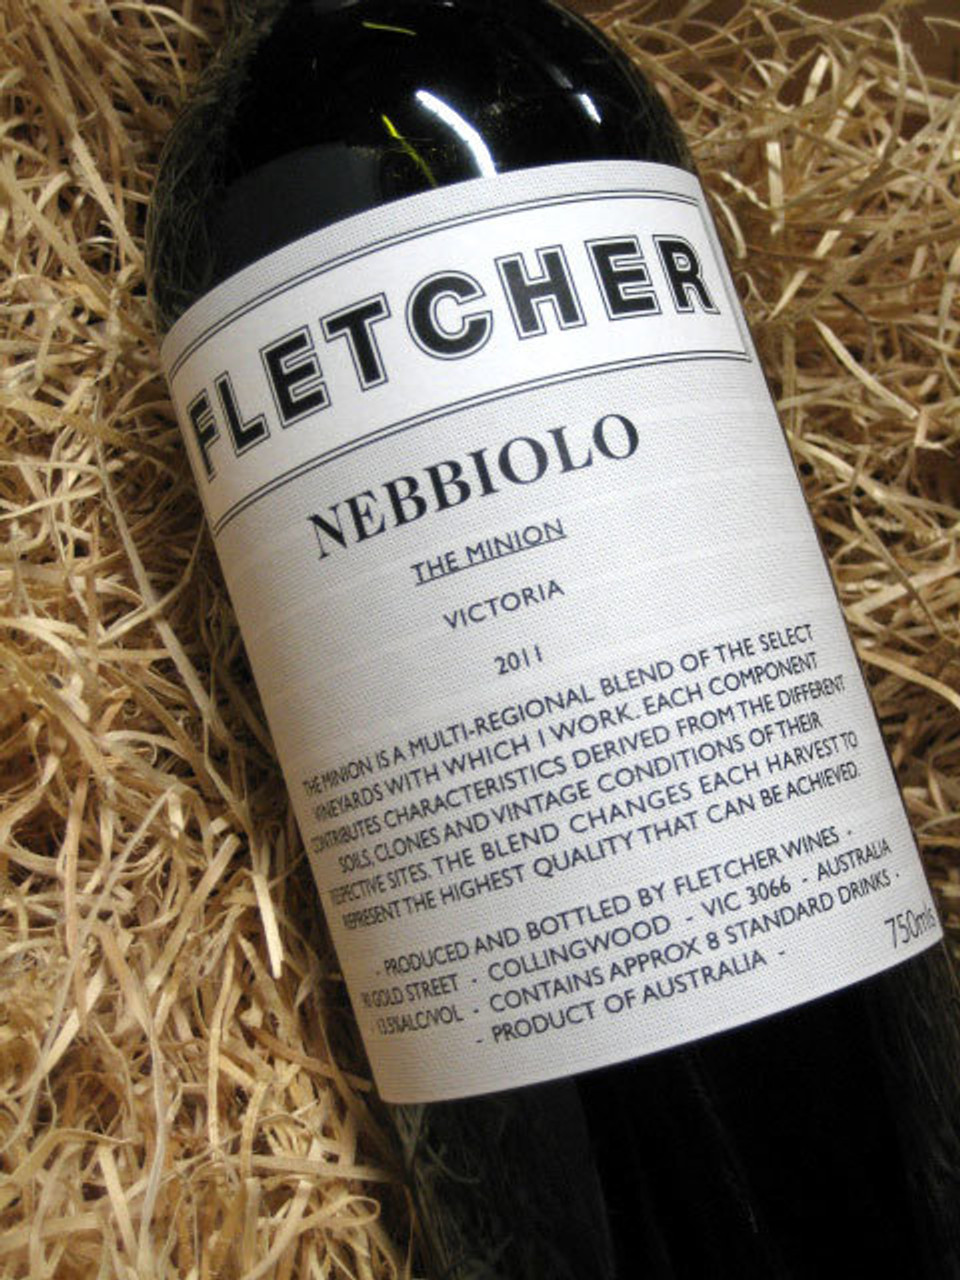 kemikalier fordøjelse Punktlighed SOLD-OUT] Fletcher Minion Nebbiolo 2011 - Melbourne Wine House